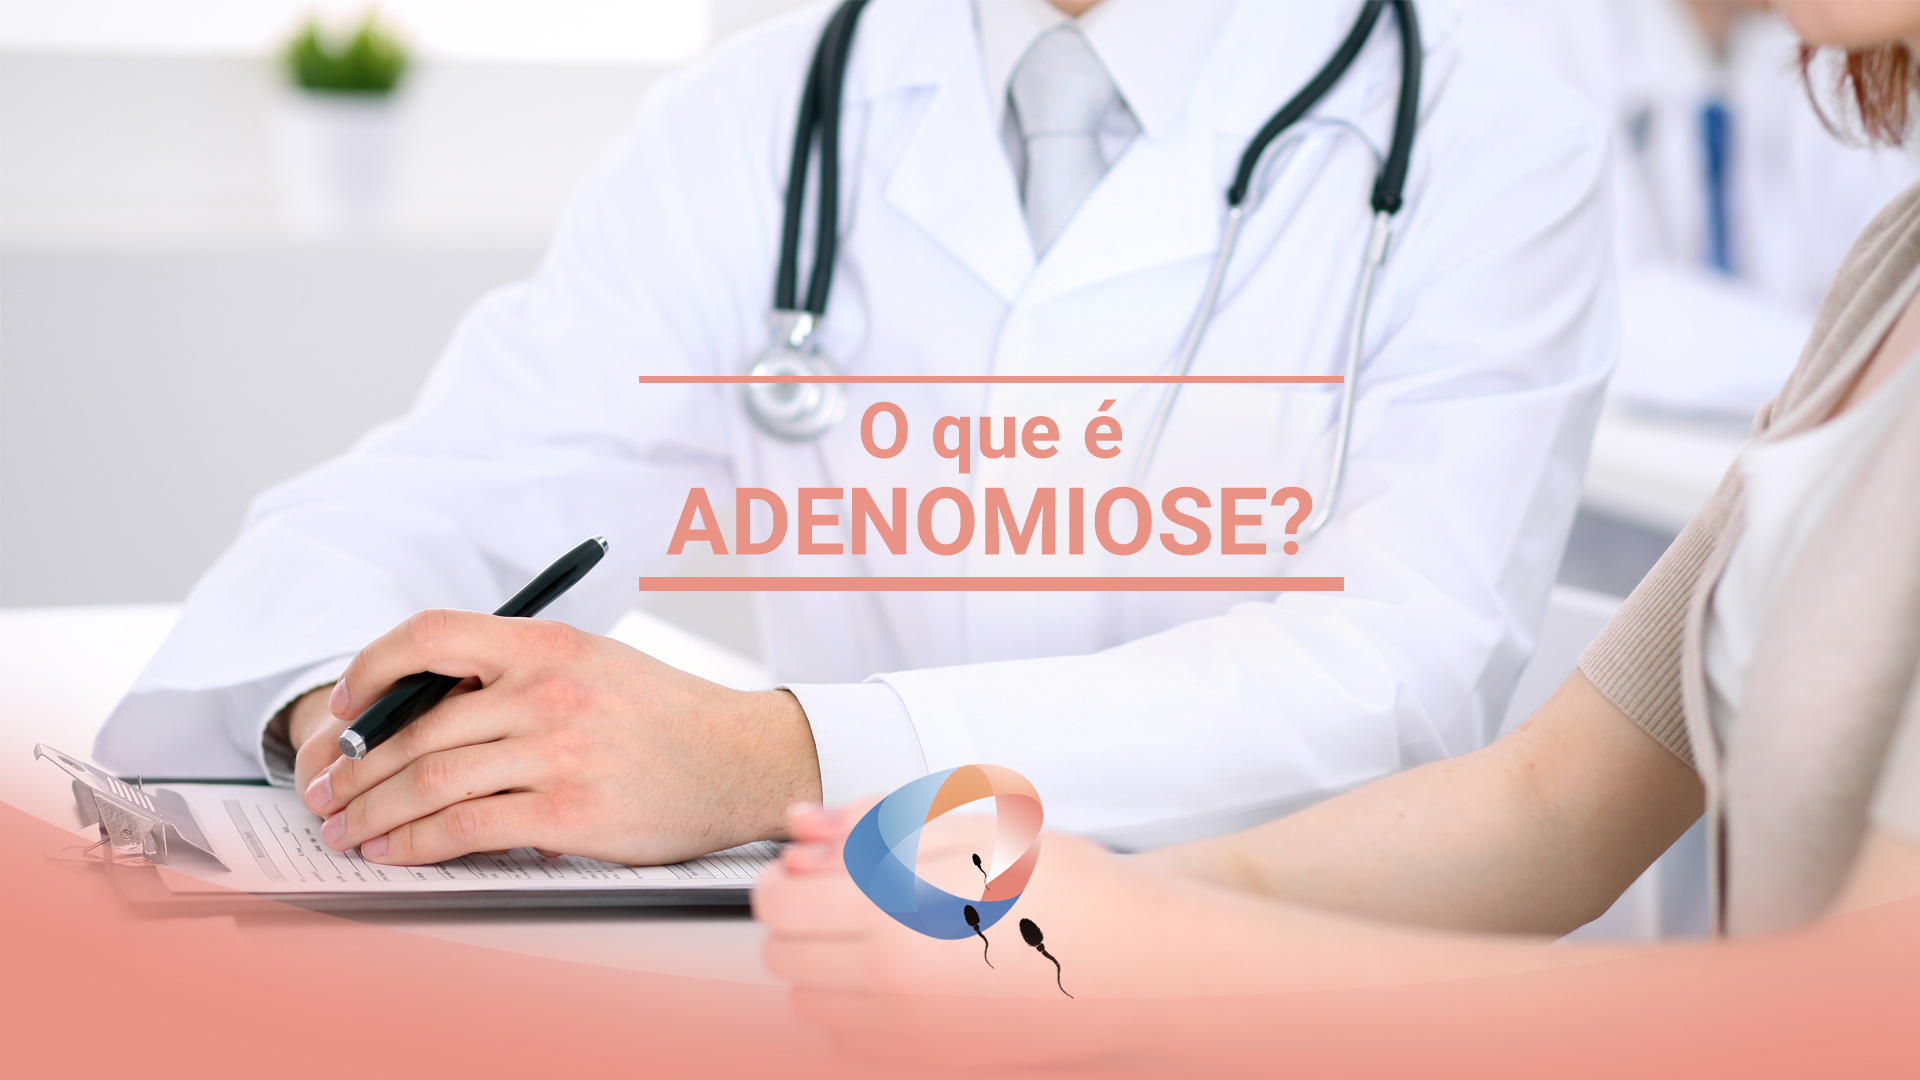 O que é adenomiose?